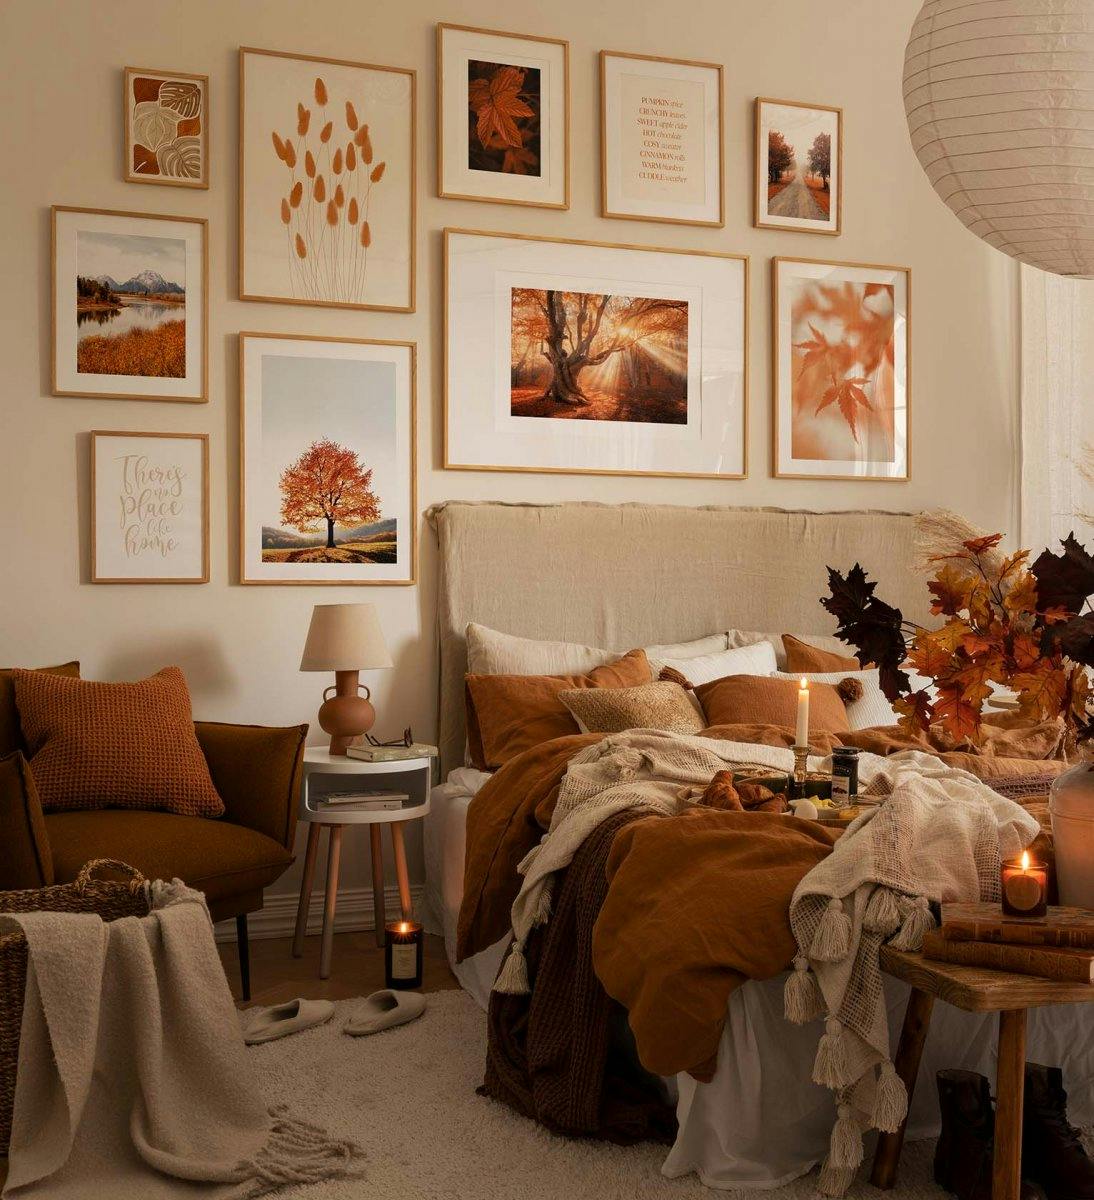 Gallery wall ispirata all'autunno con stampe e fotografie in cornici arancio e rovere per la camera da letto